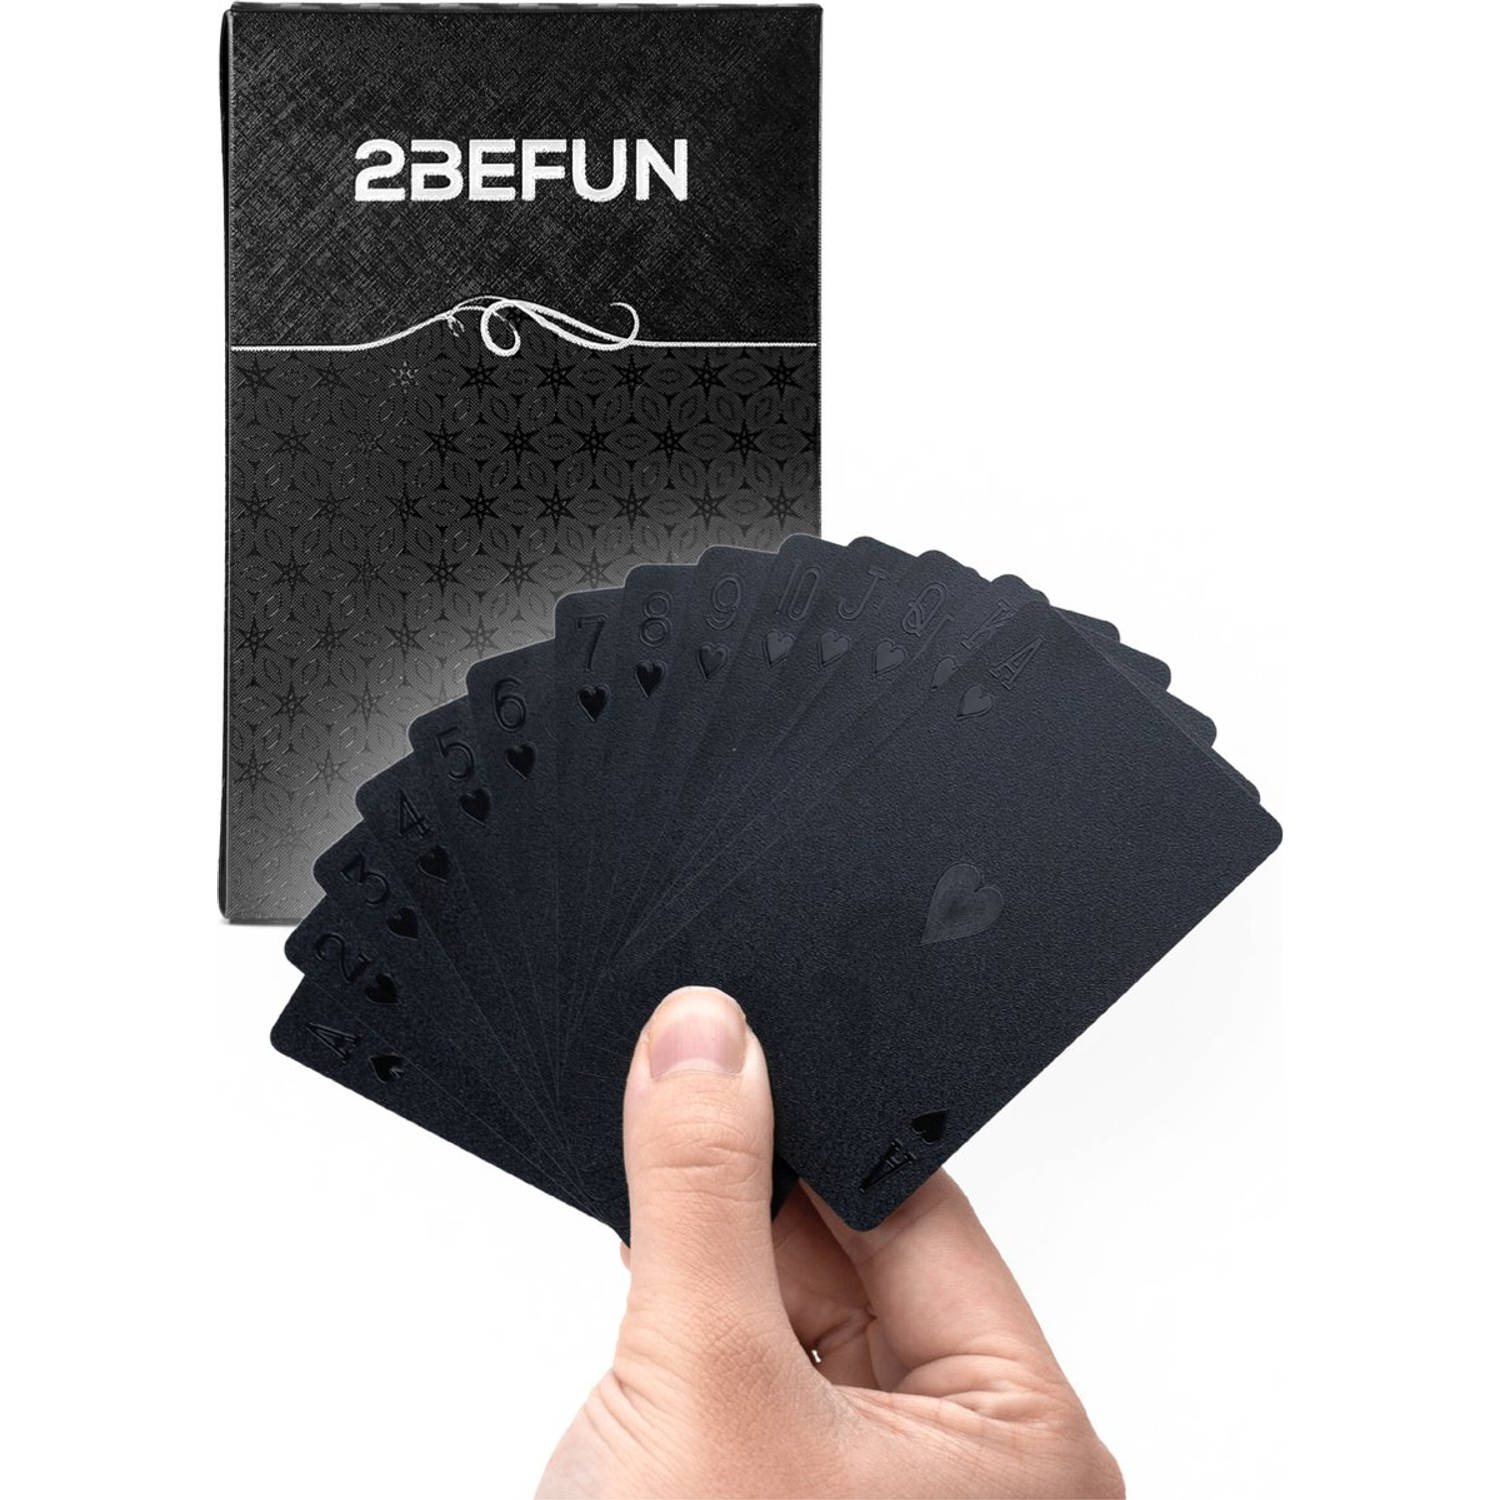 2BEFUN Luxe Waterdichte kaarten - Zwart - Kaartspel - Speelkaarten - Spelletjes voor volwassenen - Pokerkaarten